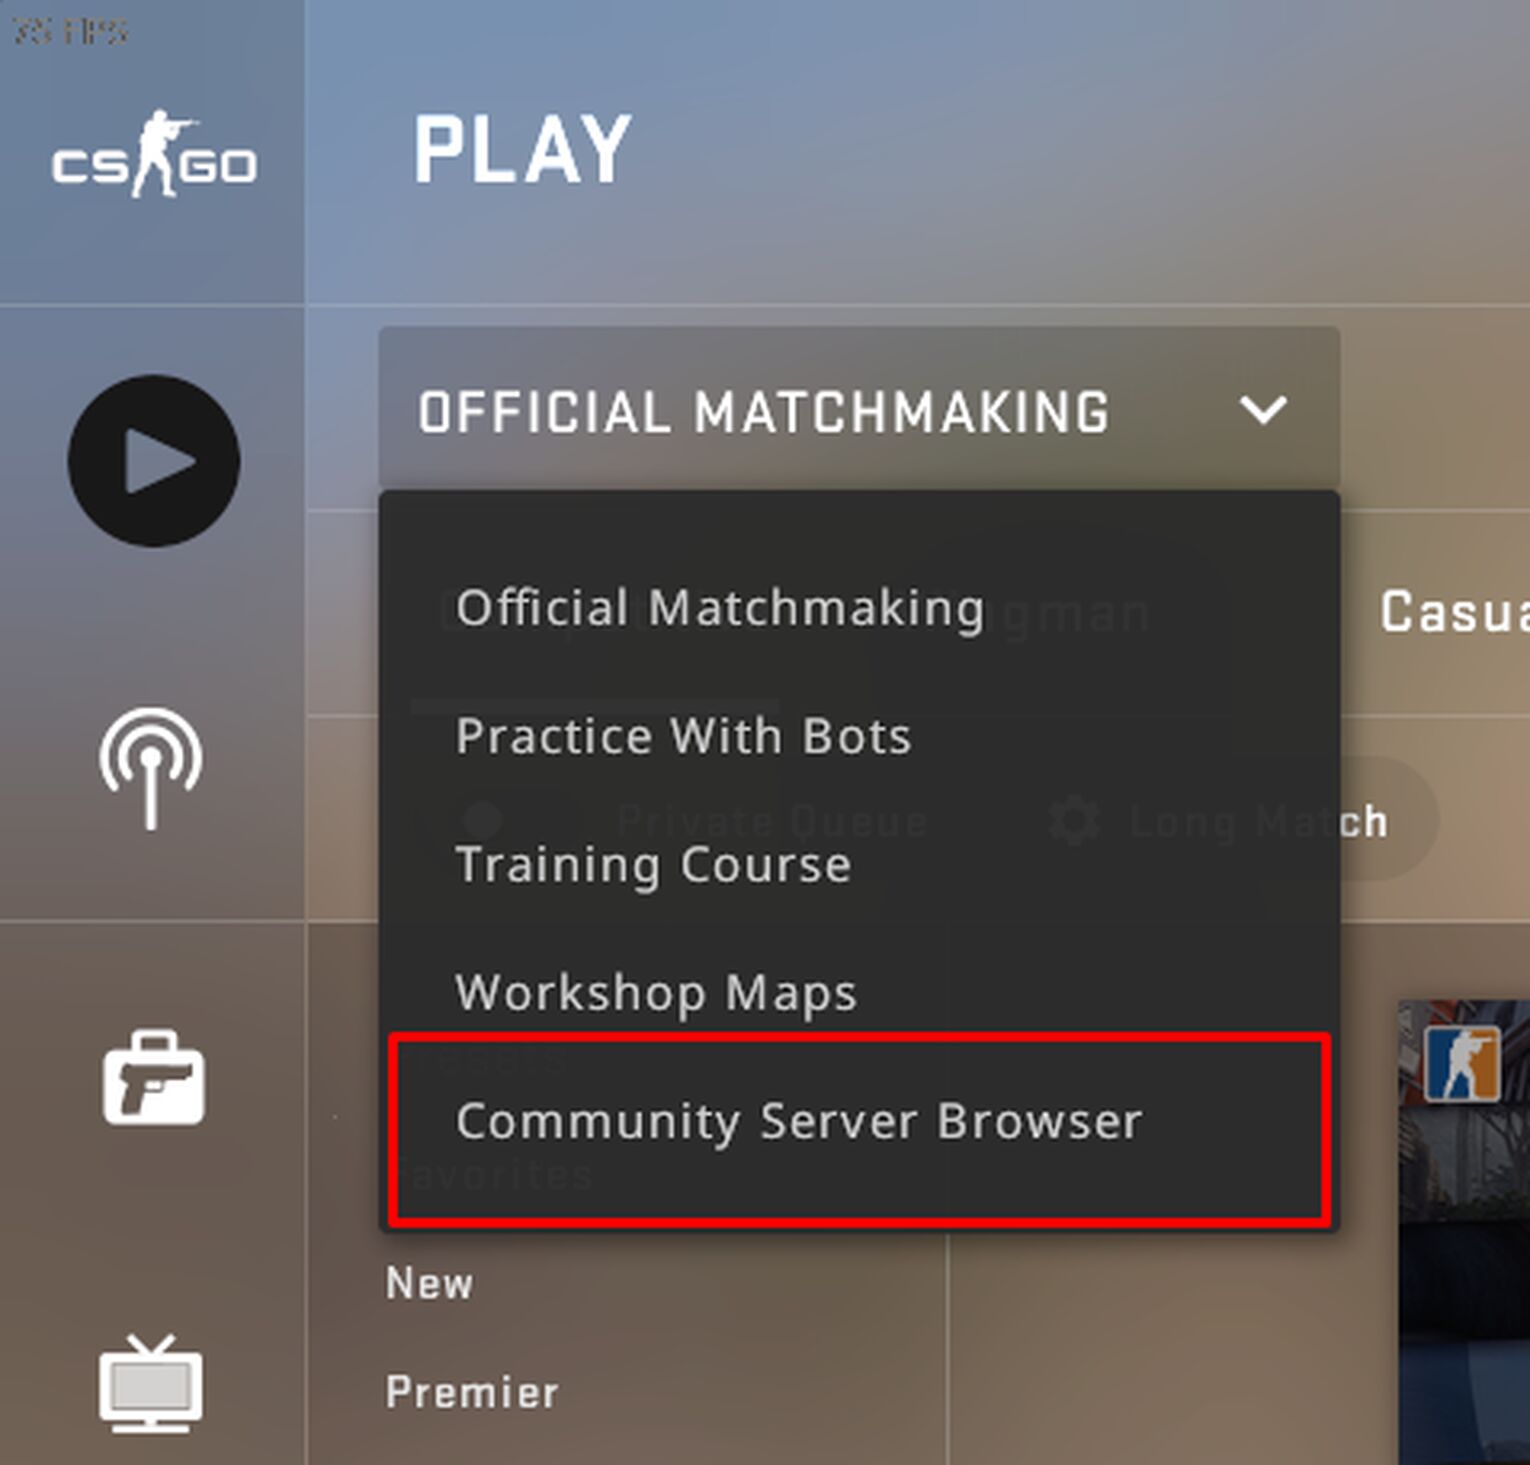 Community Server Browser